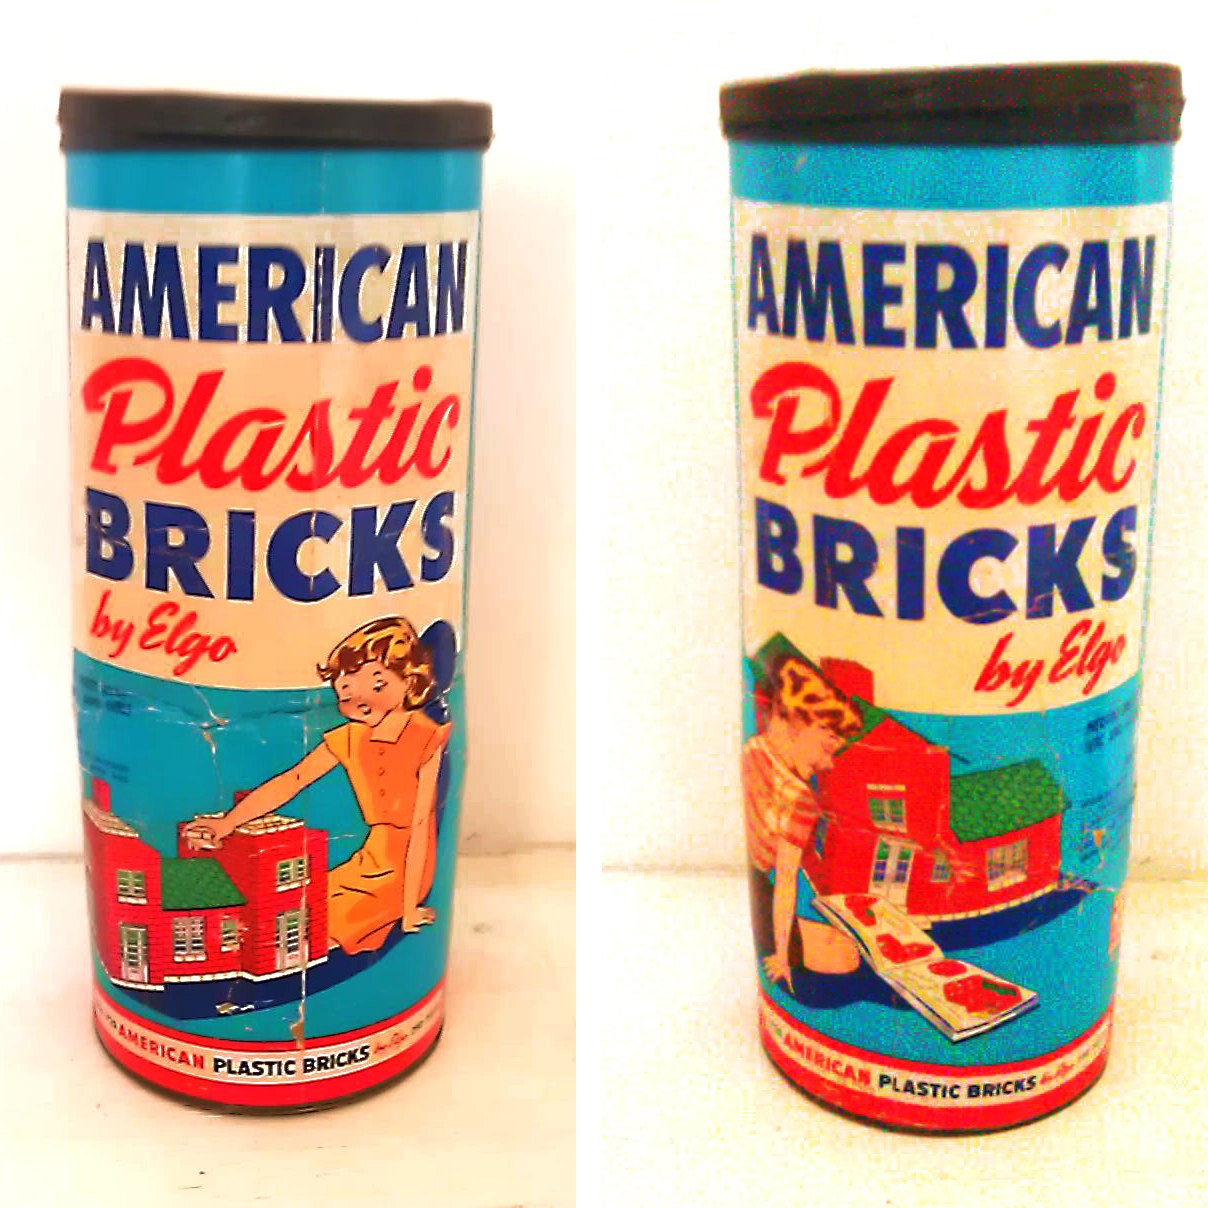 Vintage American Plastic Bricks Red Brick Building Blocks by Elgo Container Cardboard Tube Metal lid Packaging - EddiesShoppe